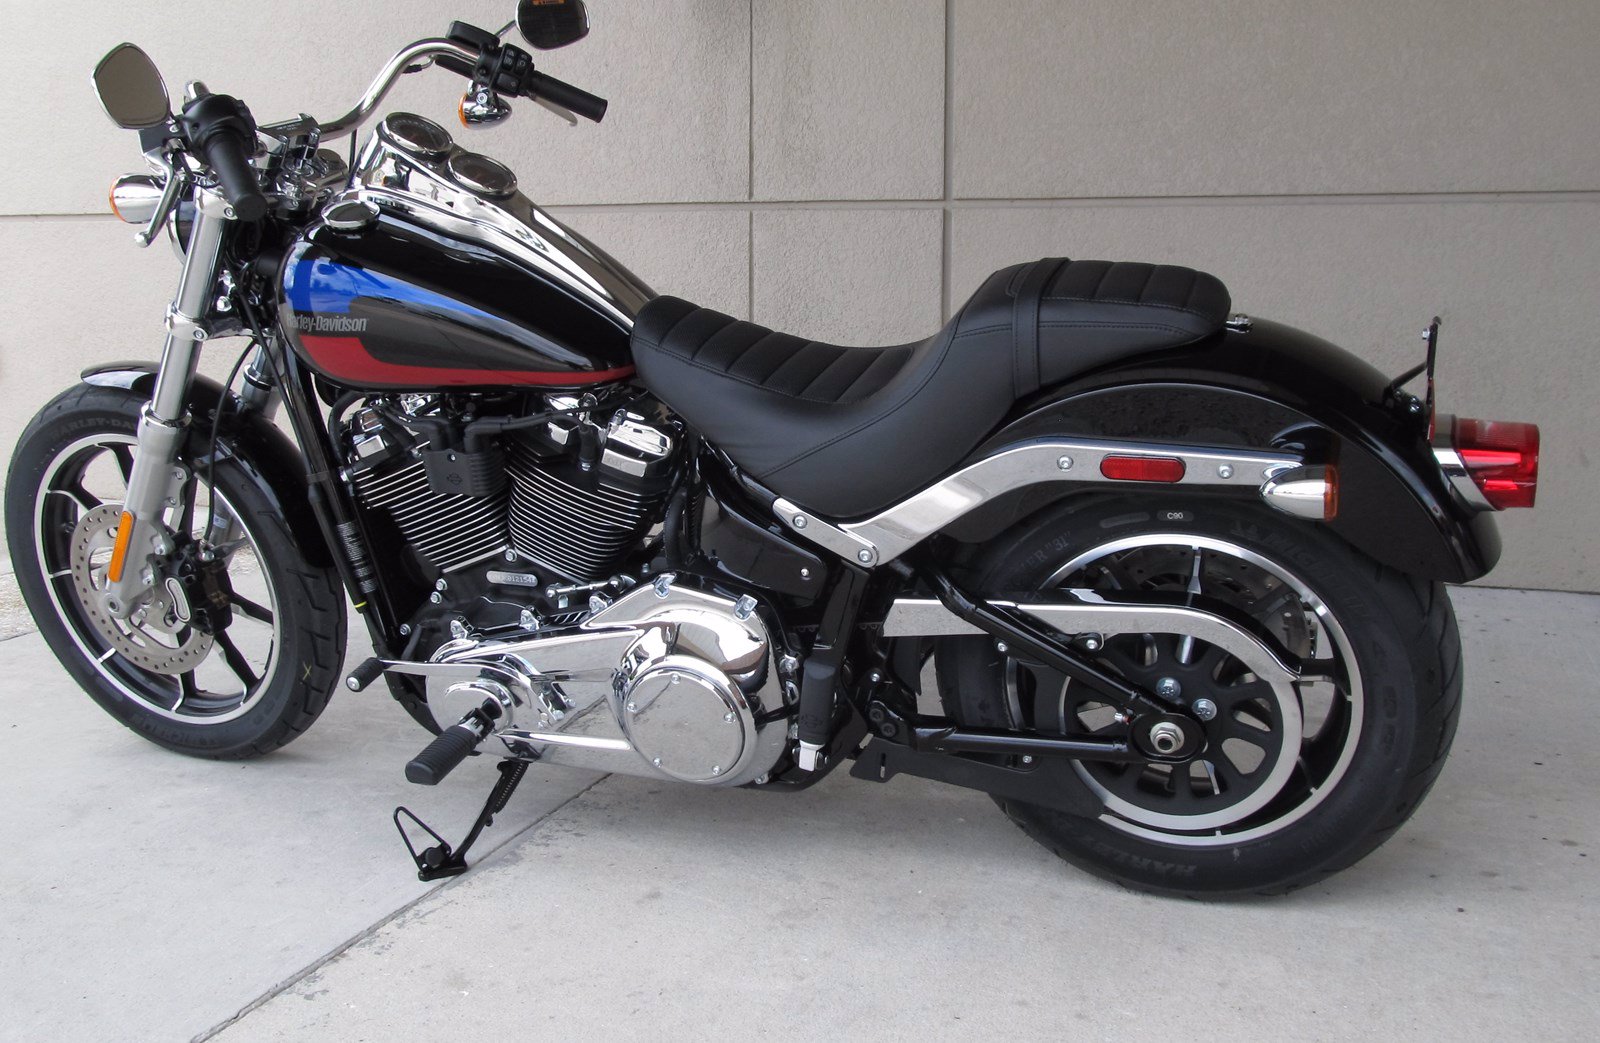 New 2019  Harley  Davidson  Softail Low  Rider  FXLR Softail in 